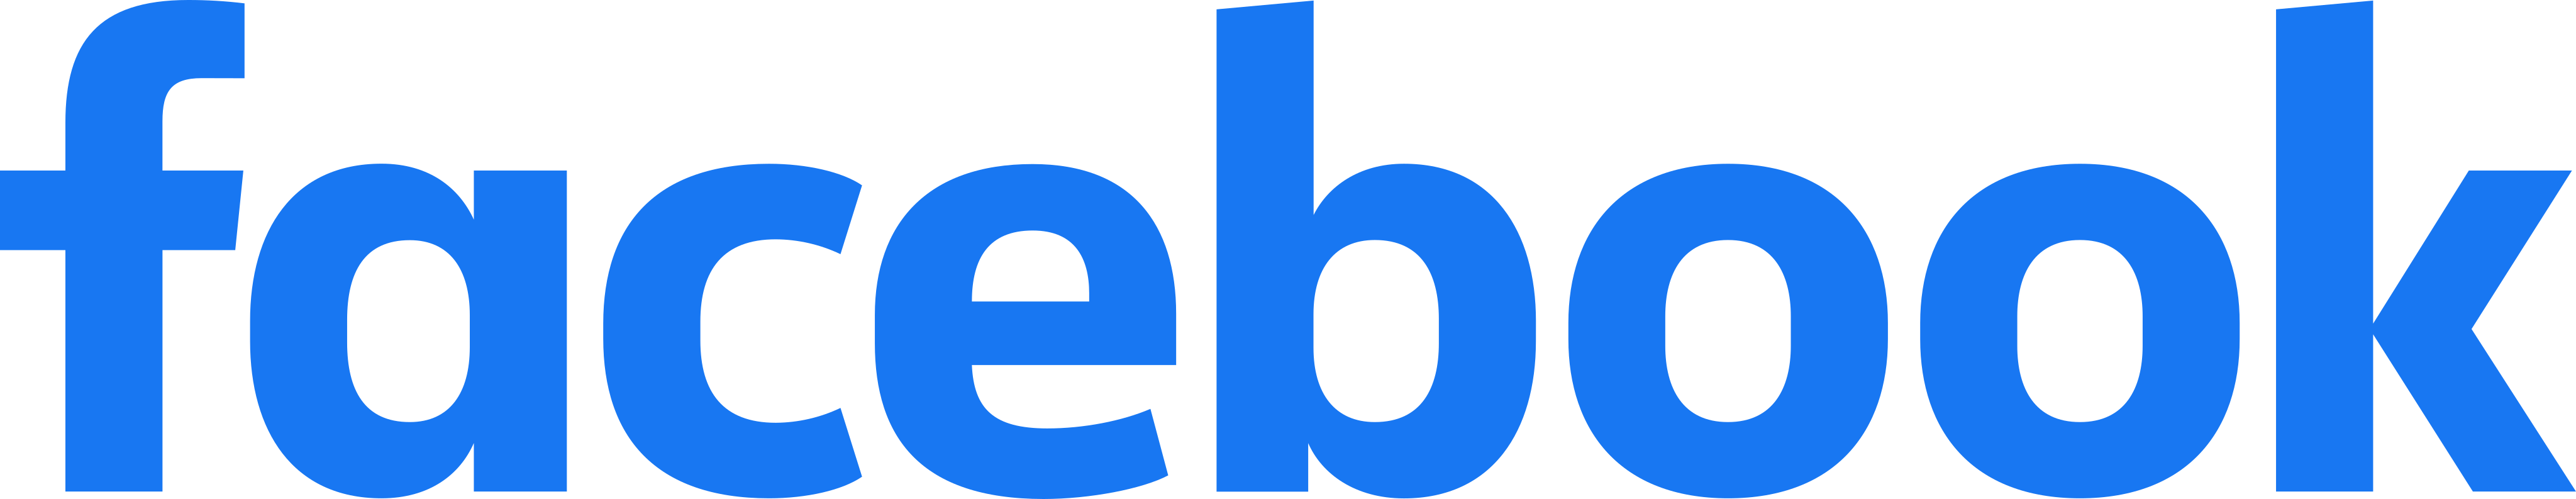 Facebook logo 15